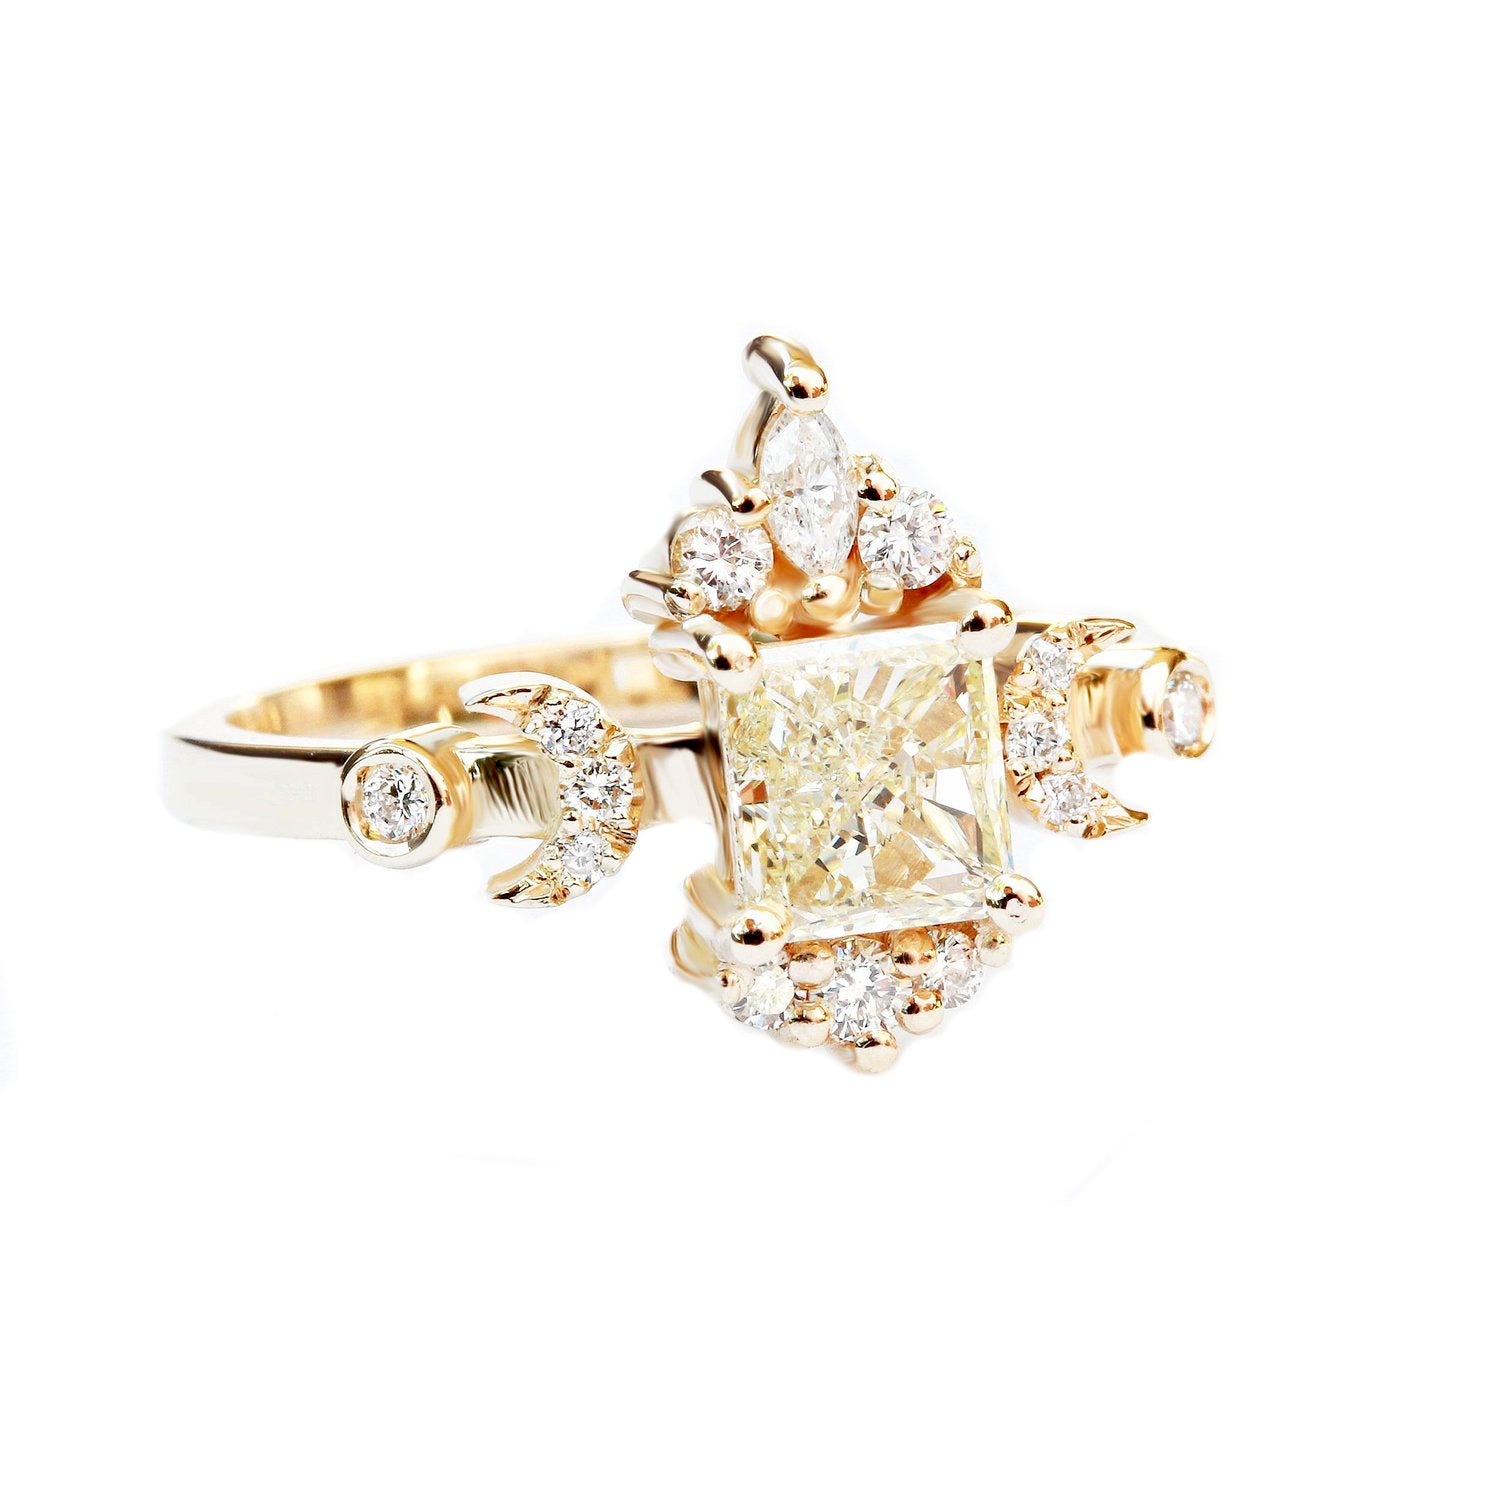 Hindi Moon phase Square Princess Cut Diamond Engagement Ring